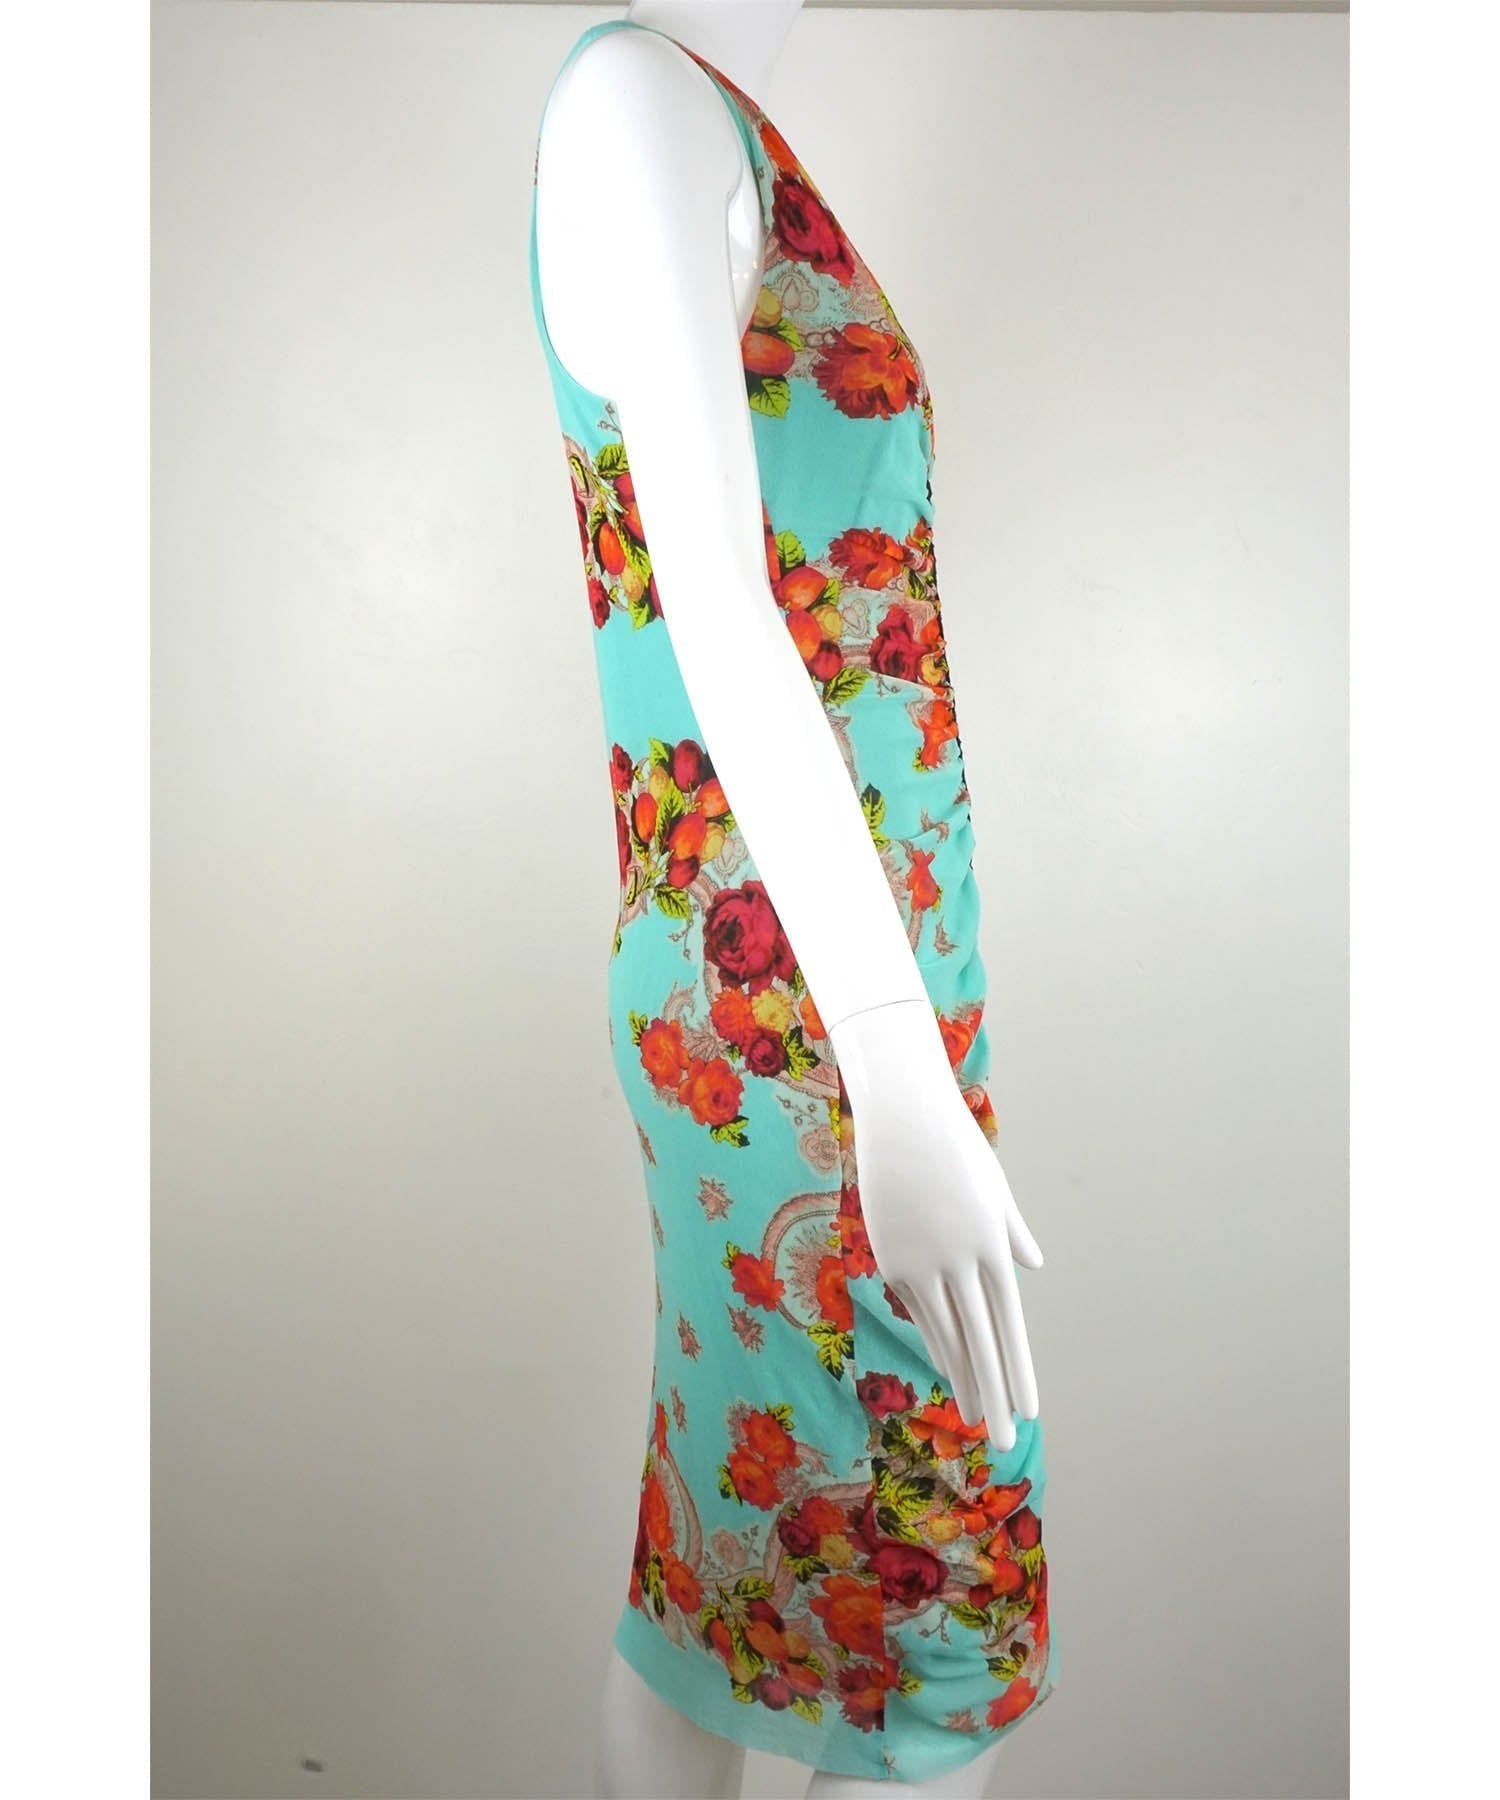 Jean Paul Gaultier Soleil Vintage Mesh Floral Dress 1990's